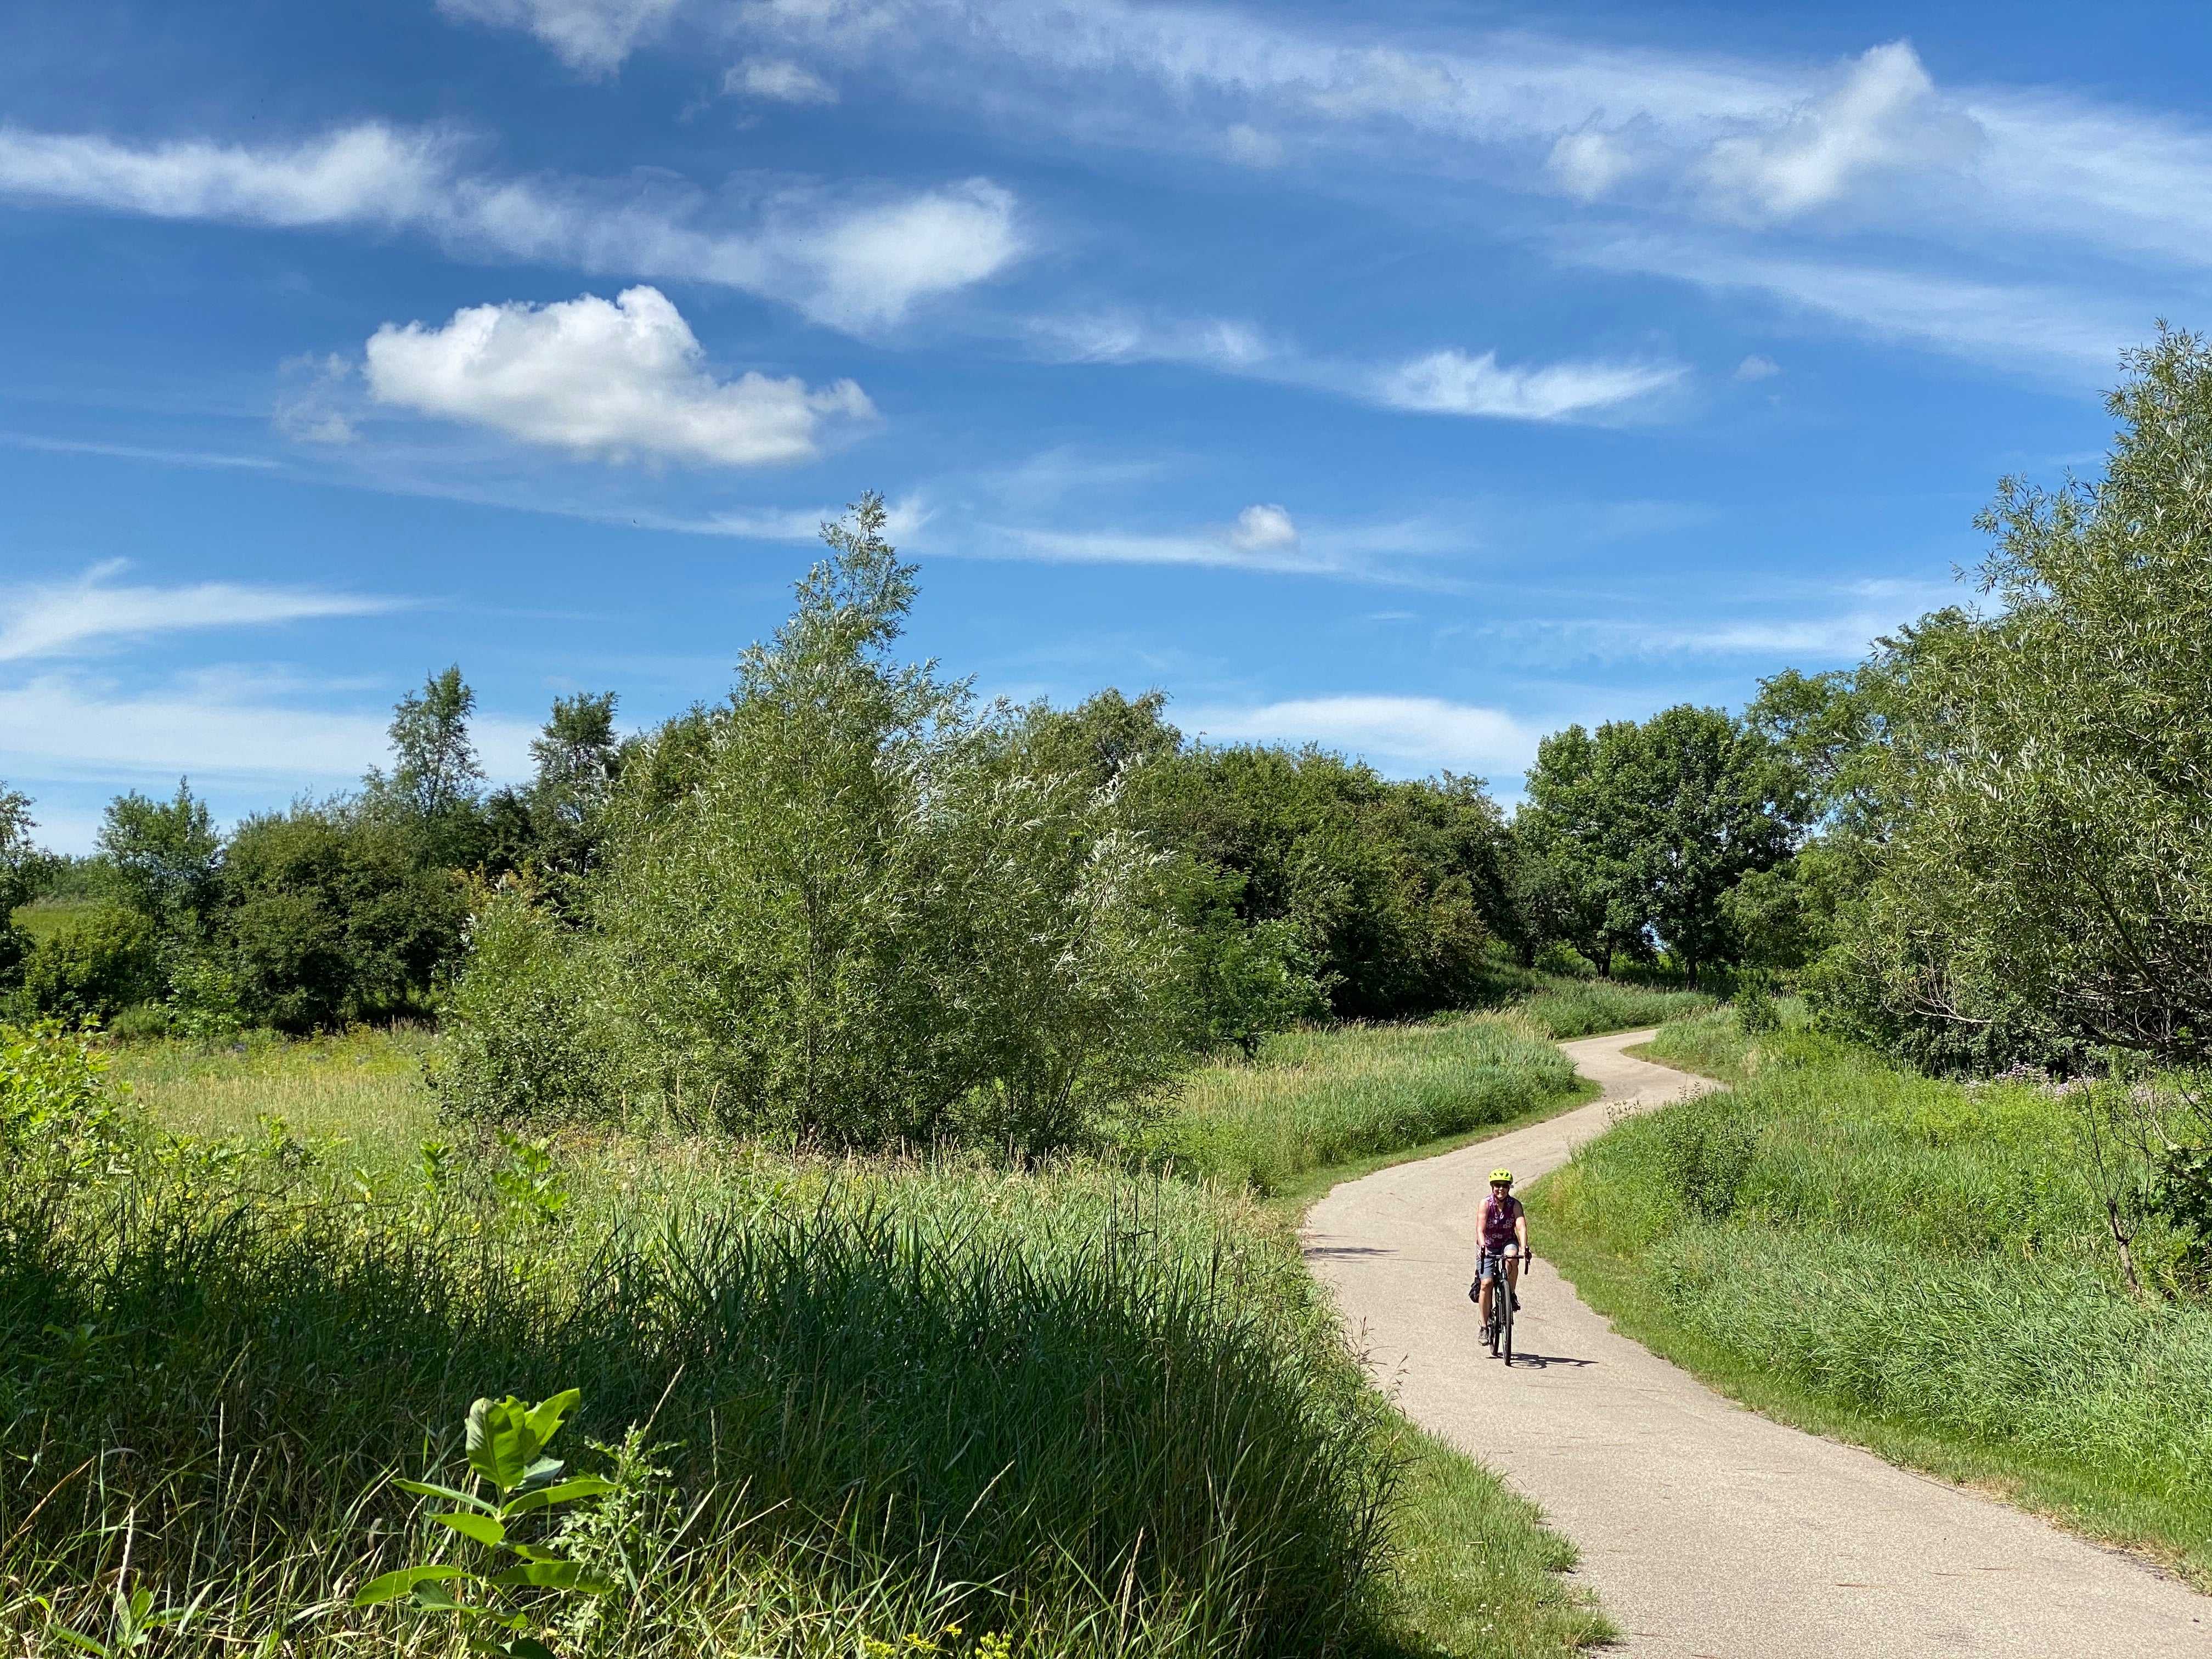 Bike trail through a prairie setting in Jackson.